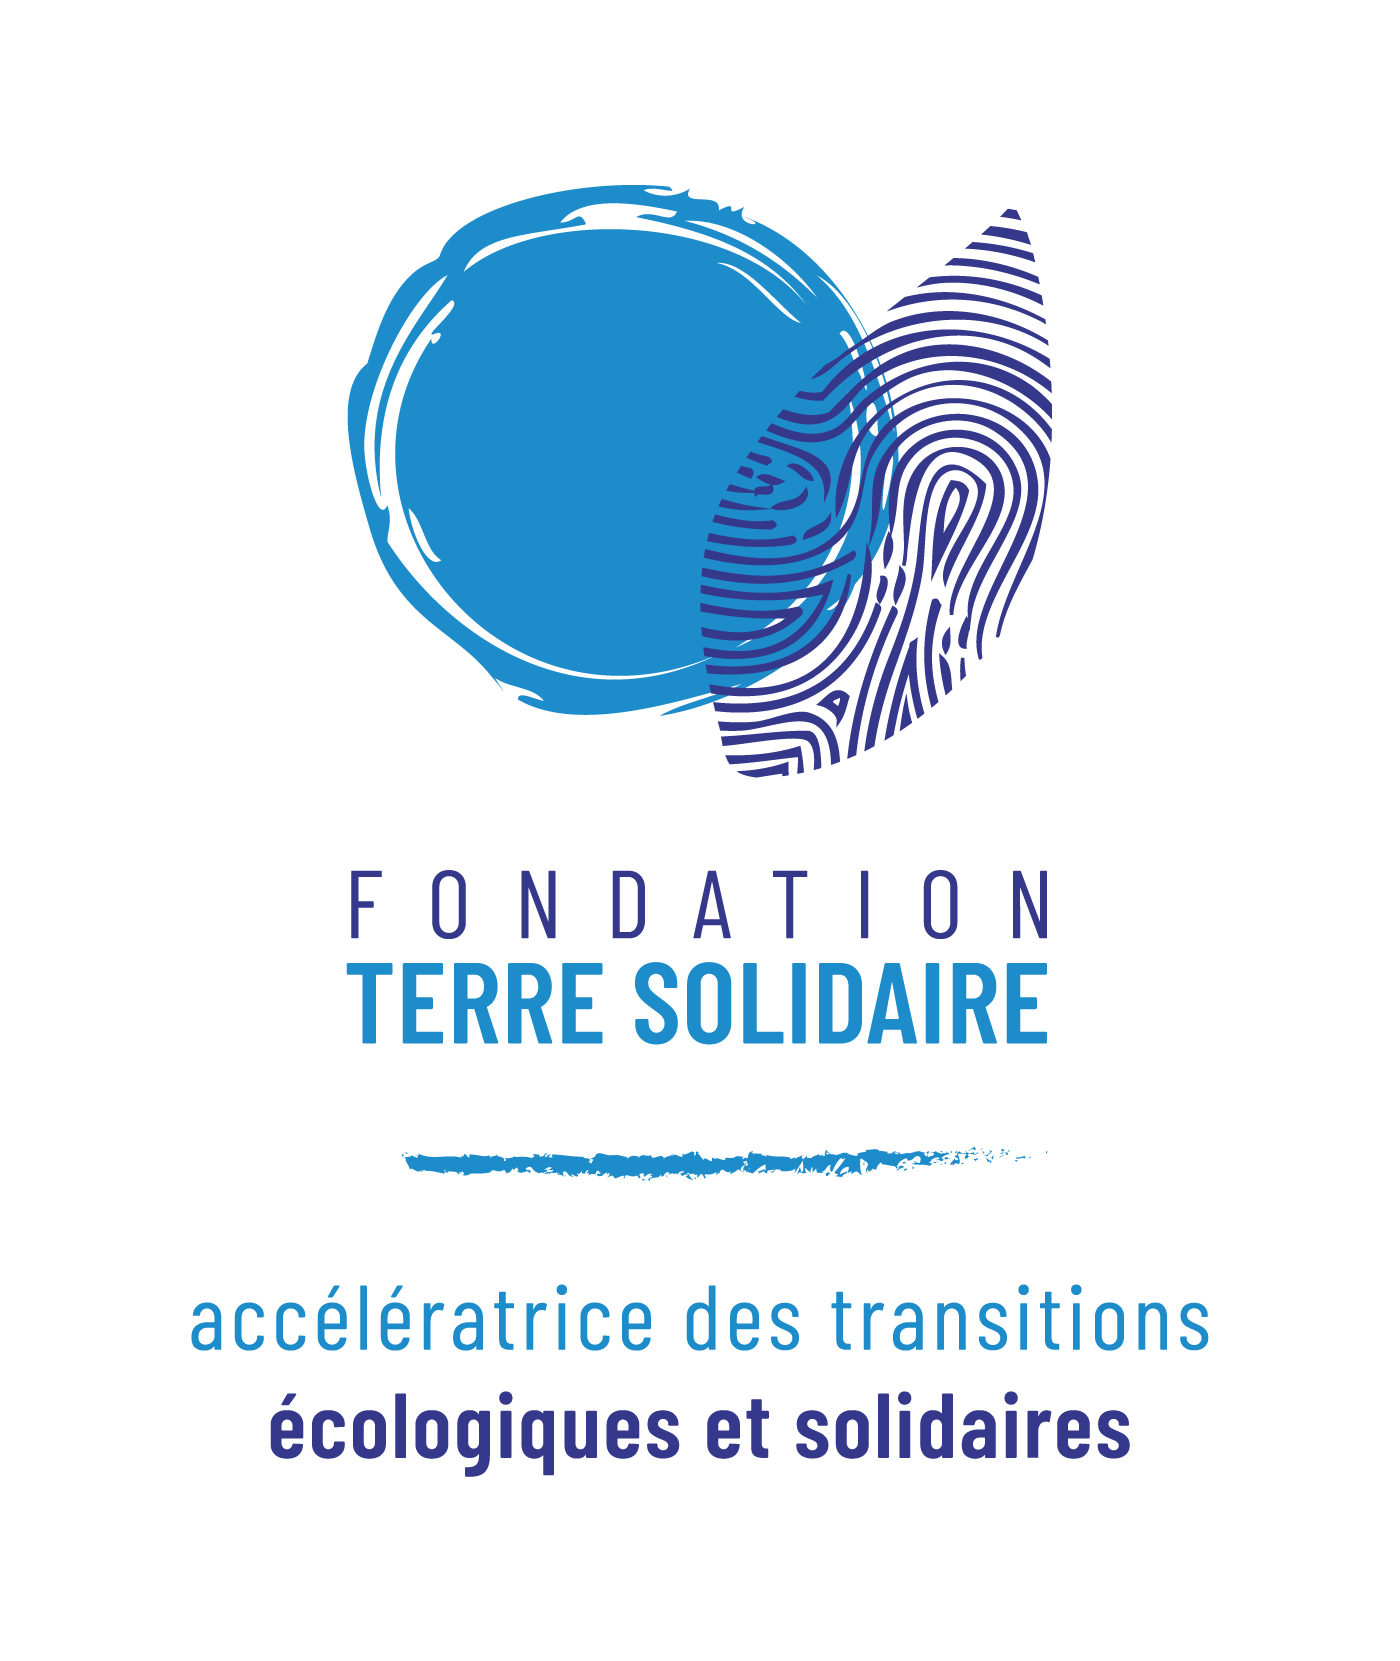 FondationTerreSolidaire-baseline.jpg